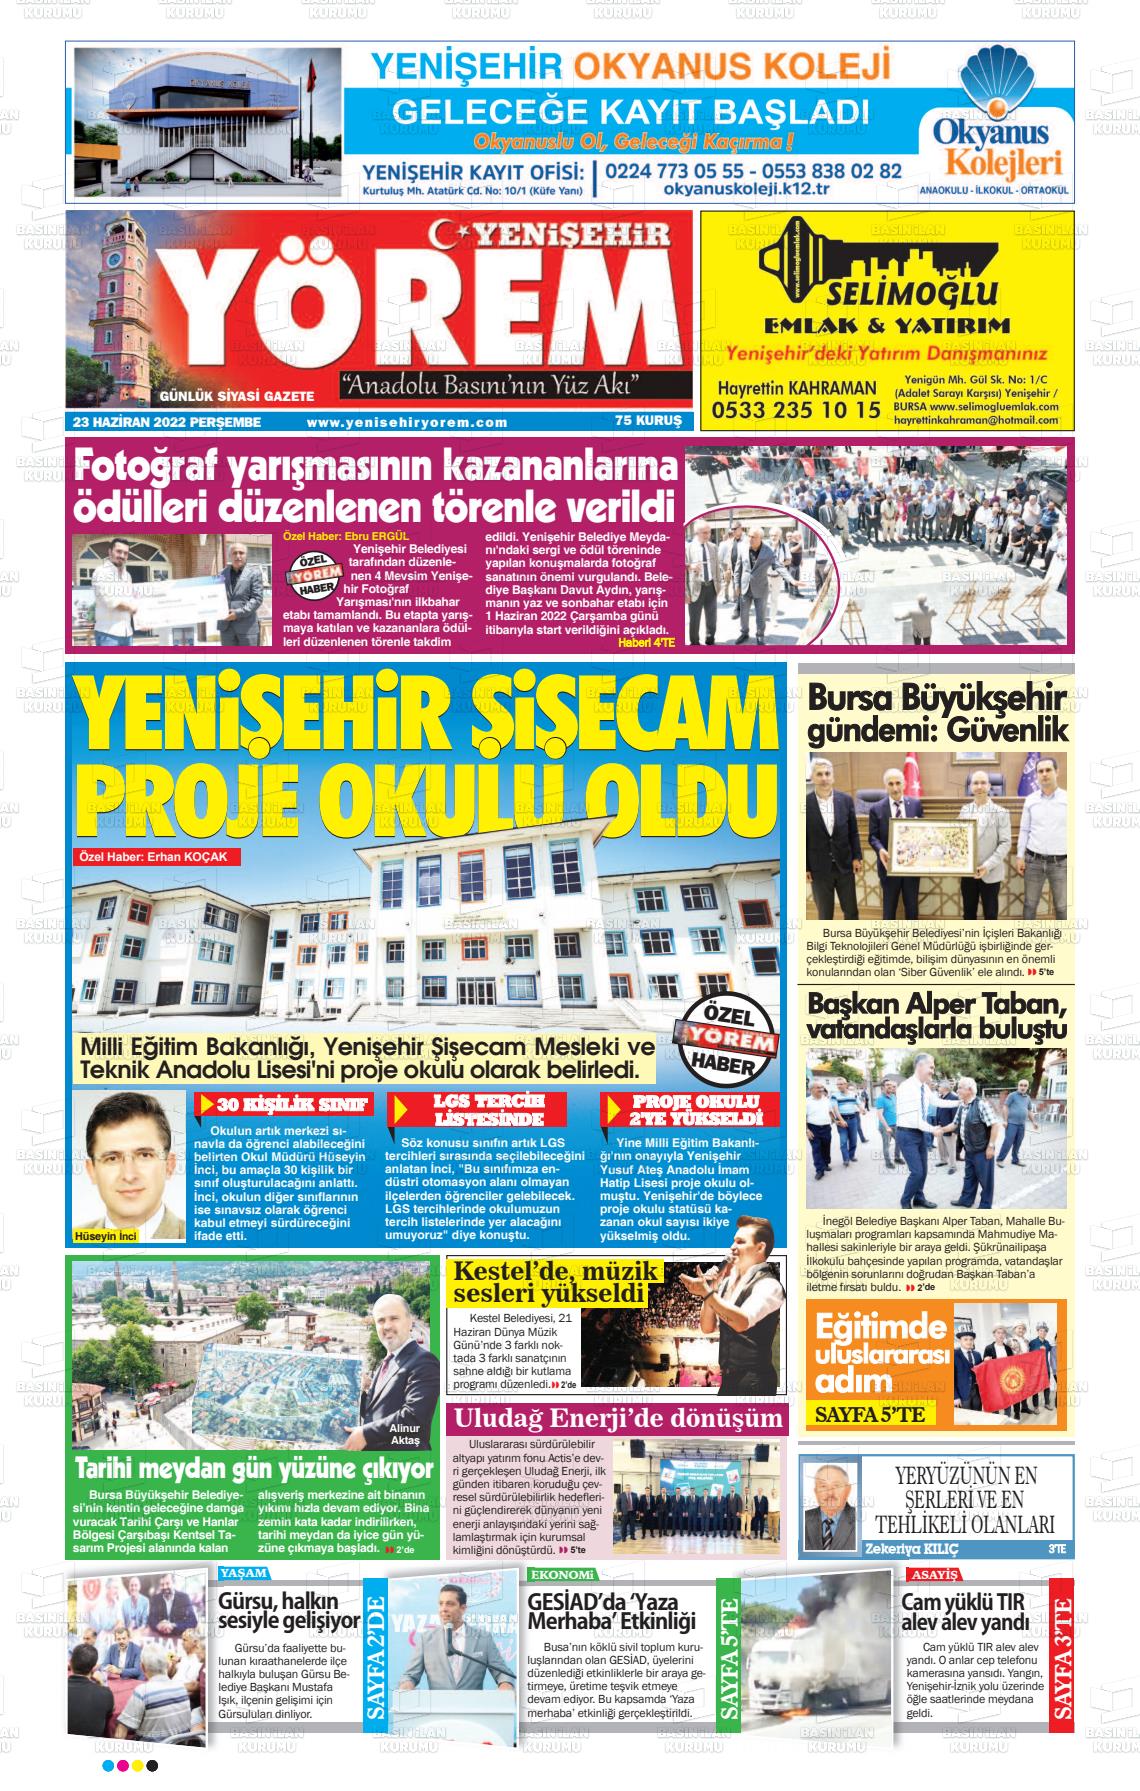 23 Haziran 2022 Yenişehir Yörem Gazete Manşeti